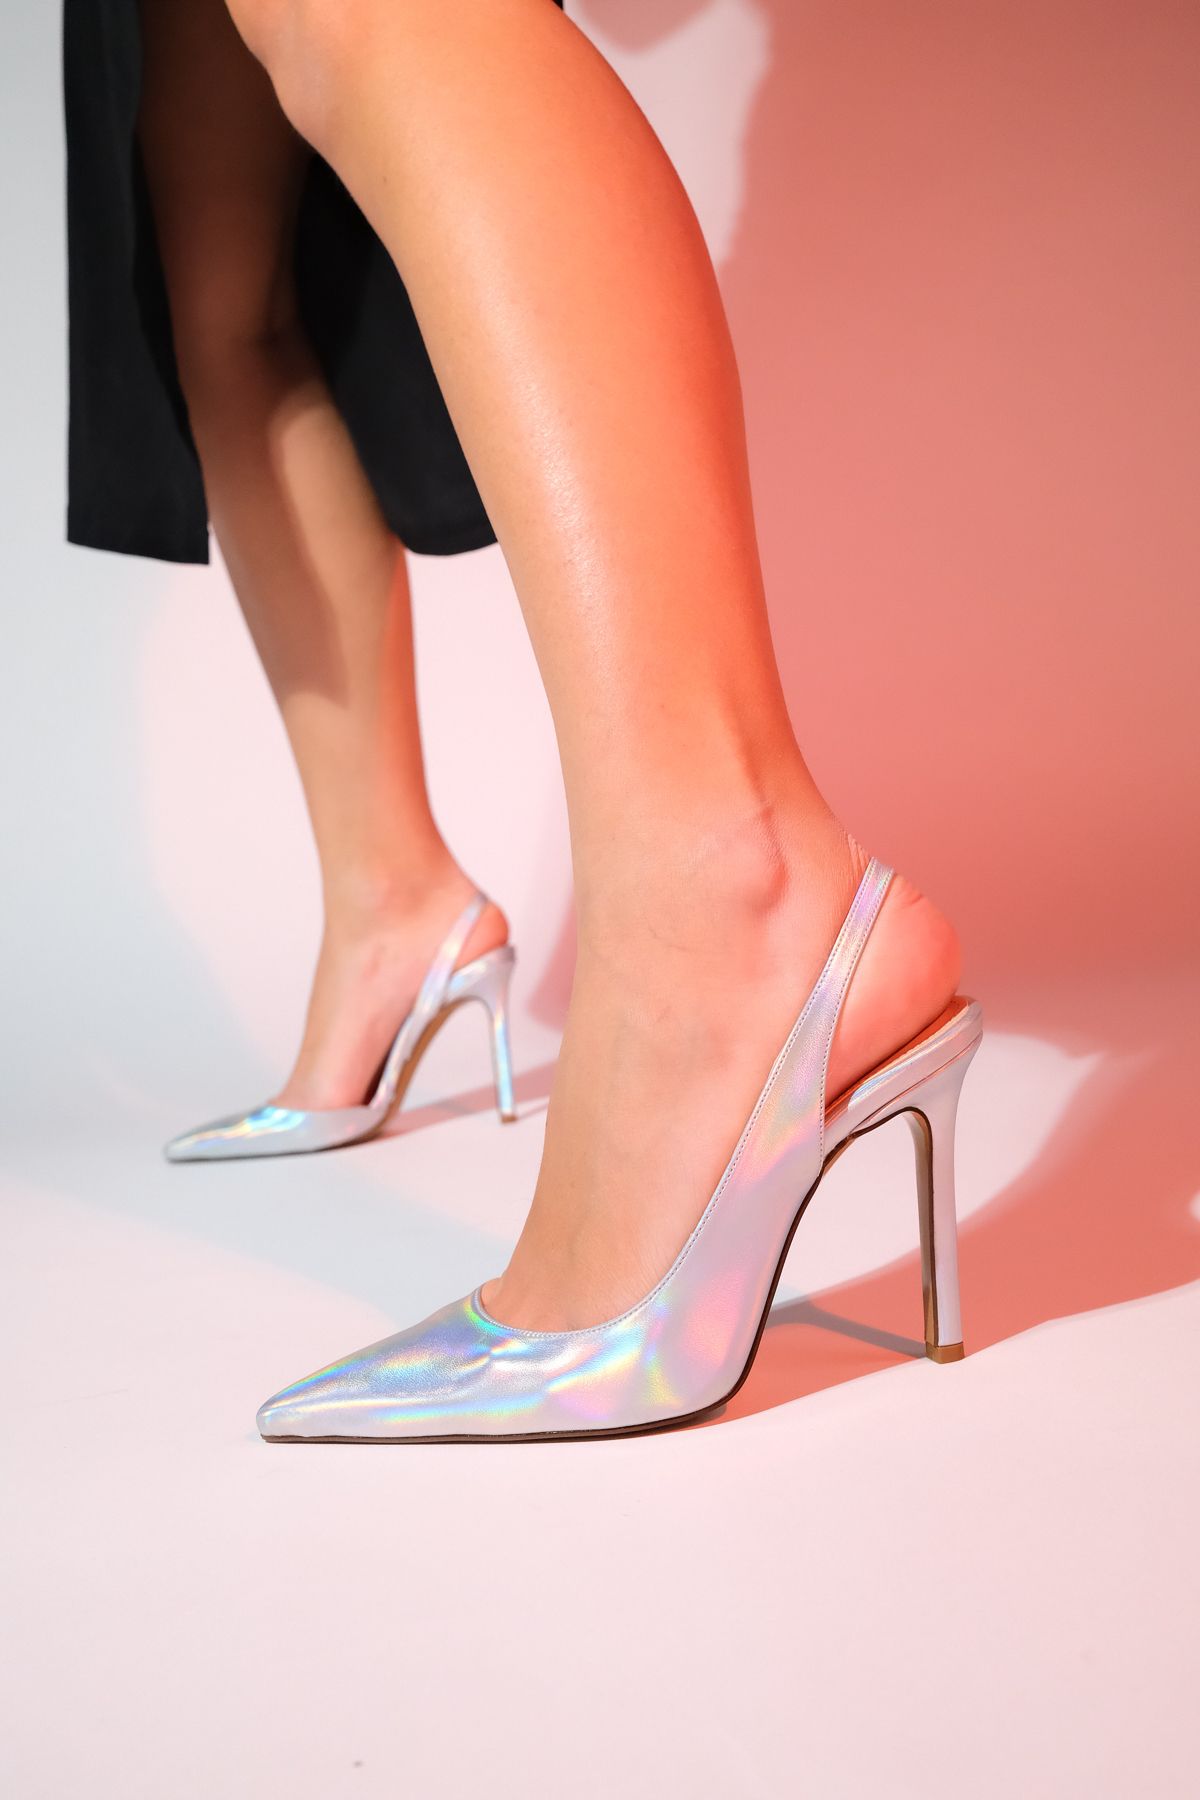 luvishoes Twine Metalik Gümüş Kadın Topuklu Ayakkabı